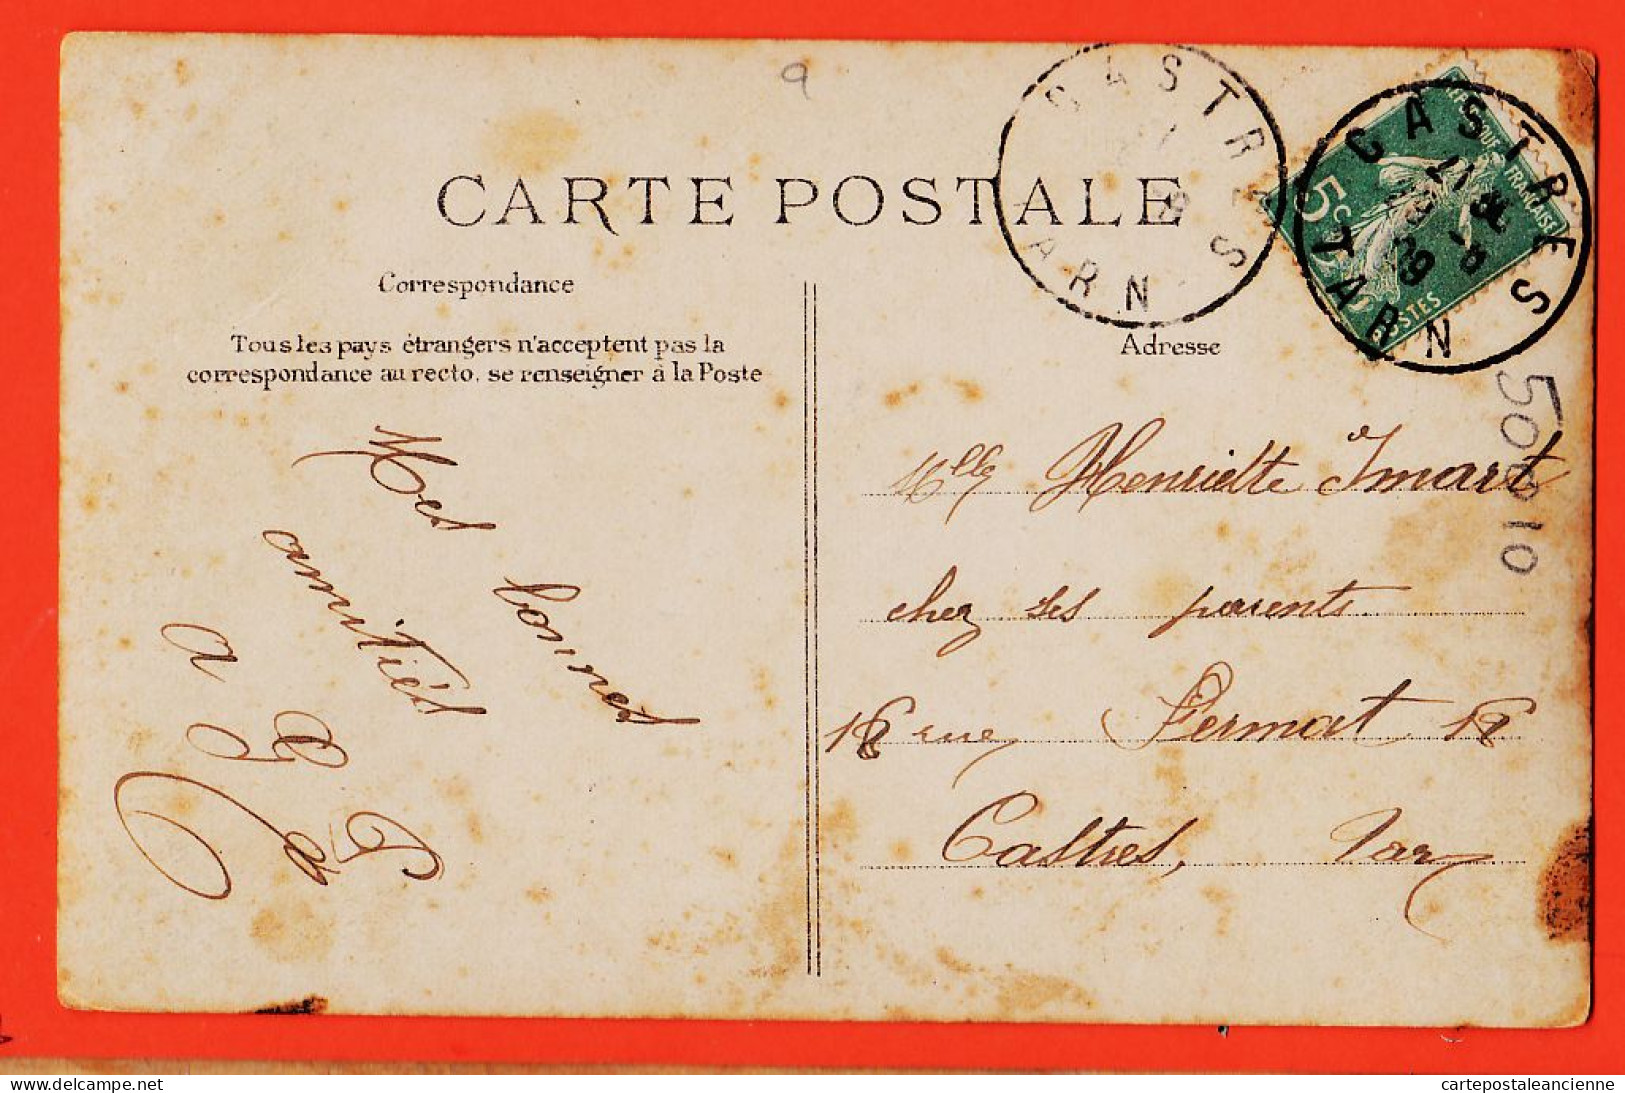 28055 / LES TIMBRES Et Leur LANGAGE 1909 à Henriette IMART Rue Fermat Castres - E.L.D LE DELEY - Briefmarken (Abbildungen)